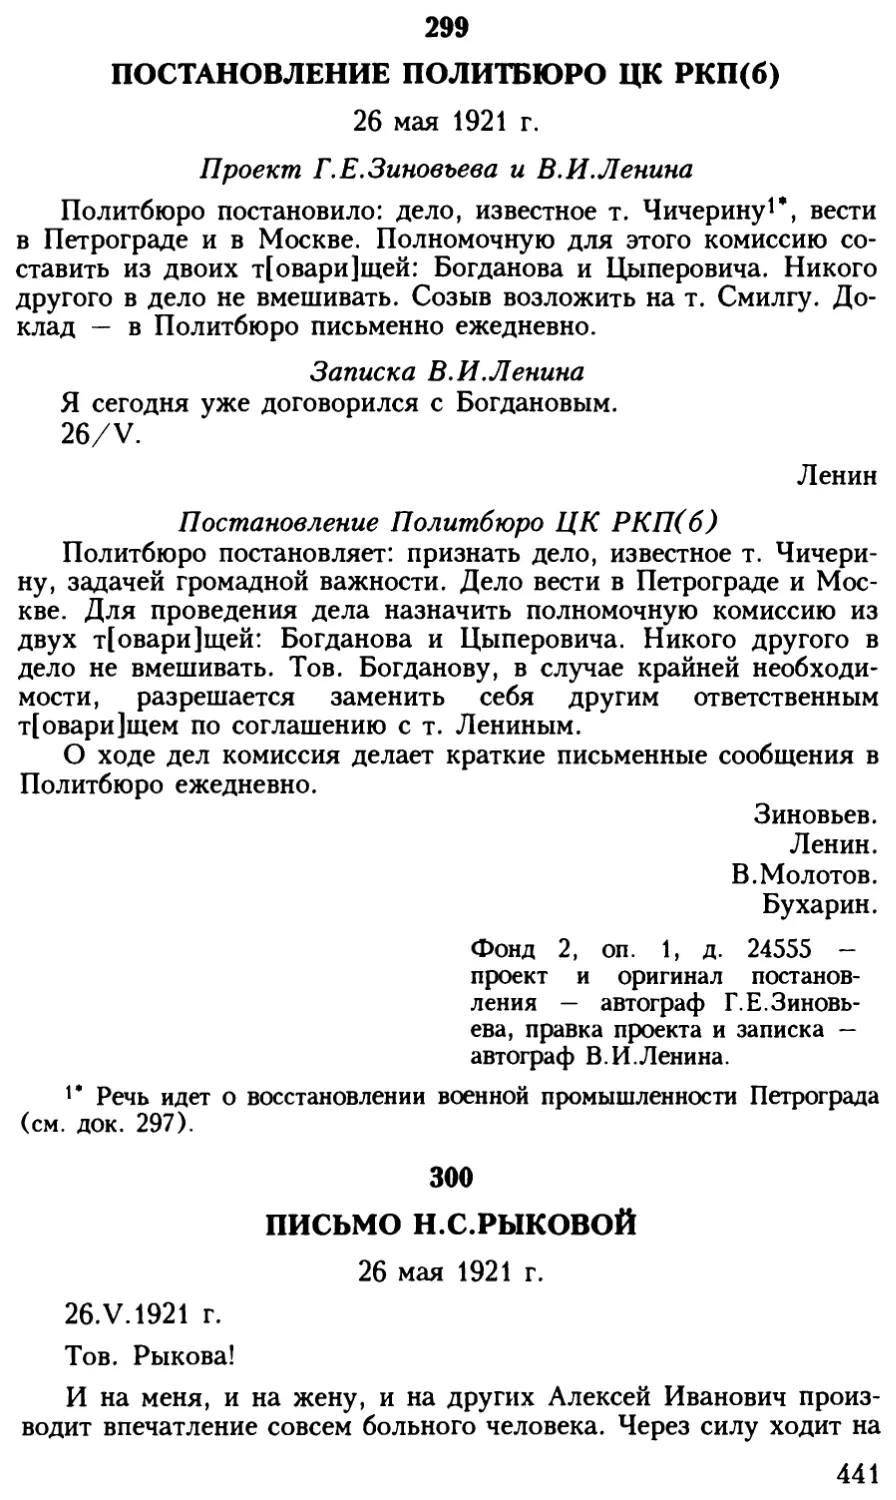 300. Письмо Н.С.Рыковой. 26 мая 1921 г